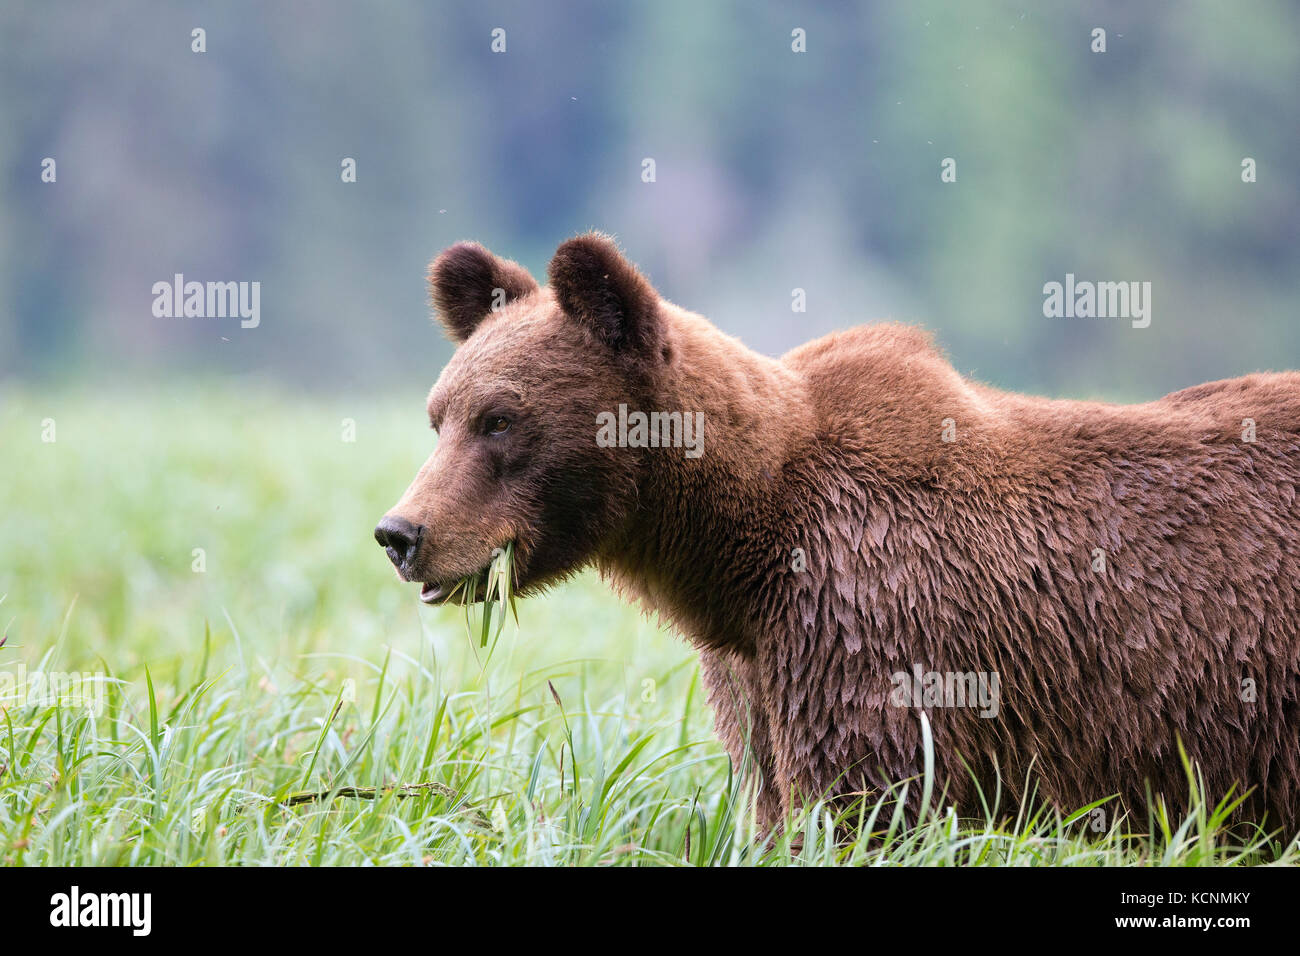 Grizzly Bear (Ursus arctos), Weibliche horriblis, Essen von lyngbye Segge (carex lyngbyei), das khutzeymateen Grizzly Bär Heiligtum, British Columbia, Kanada. Stockfoto